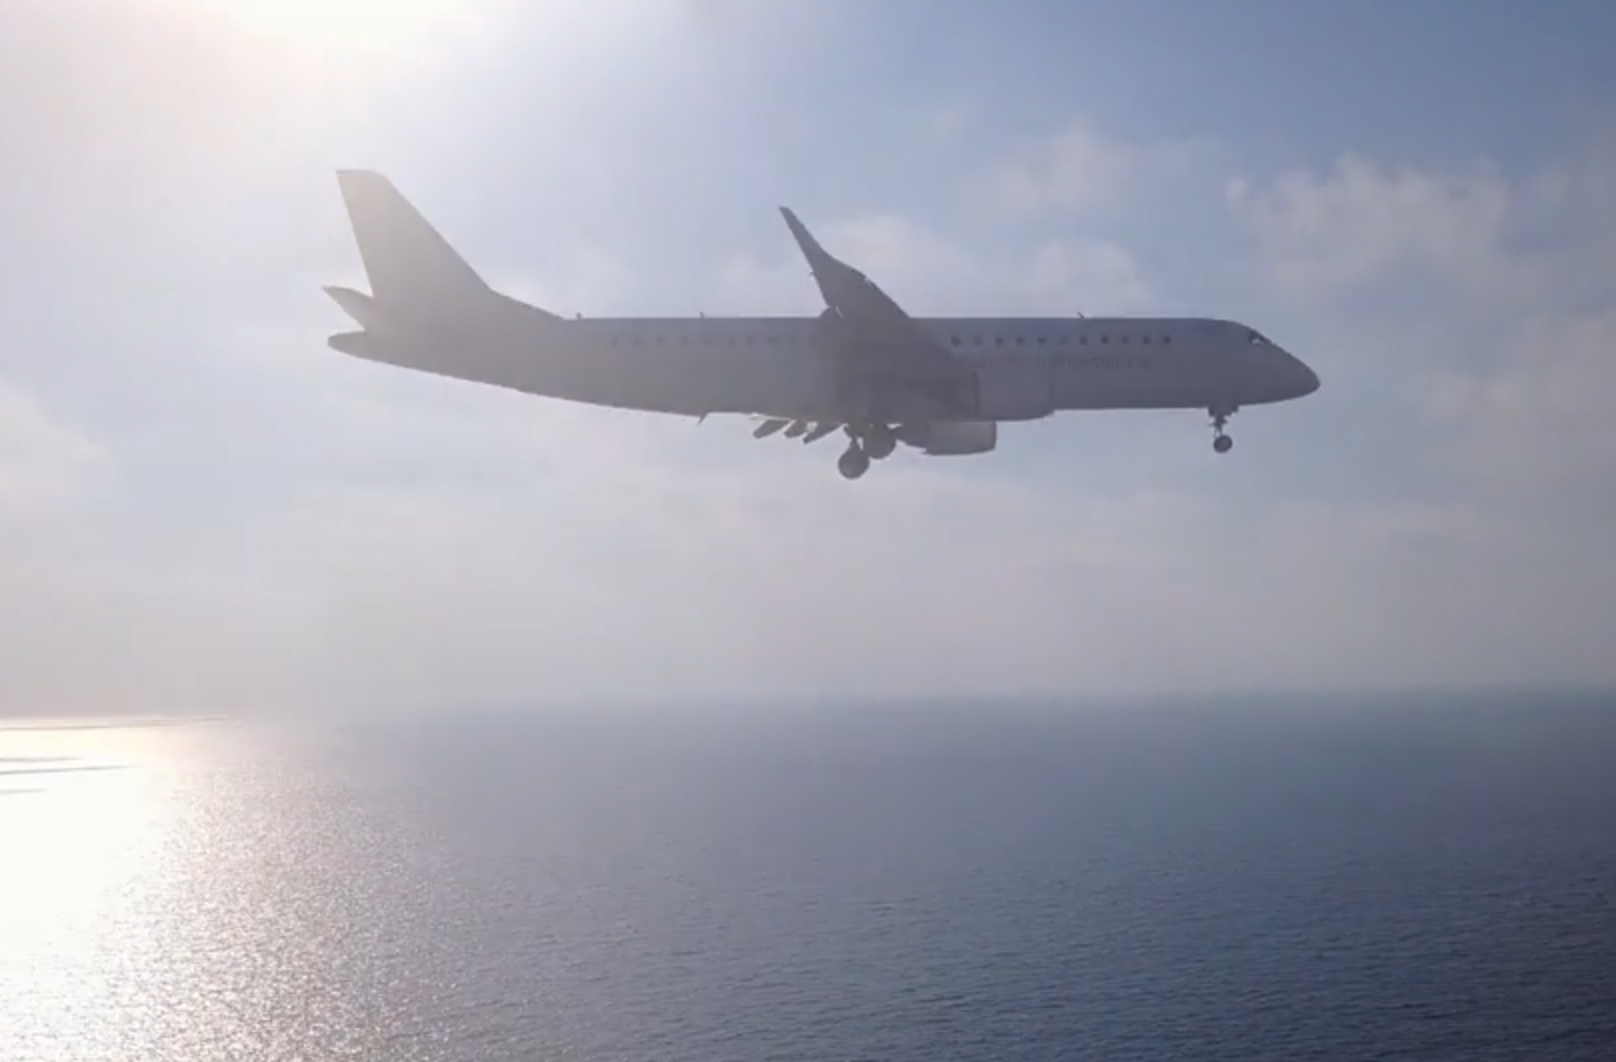 Vol près de l’aéroport de Tel Aviv : DJI prend position